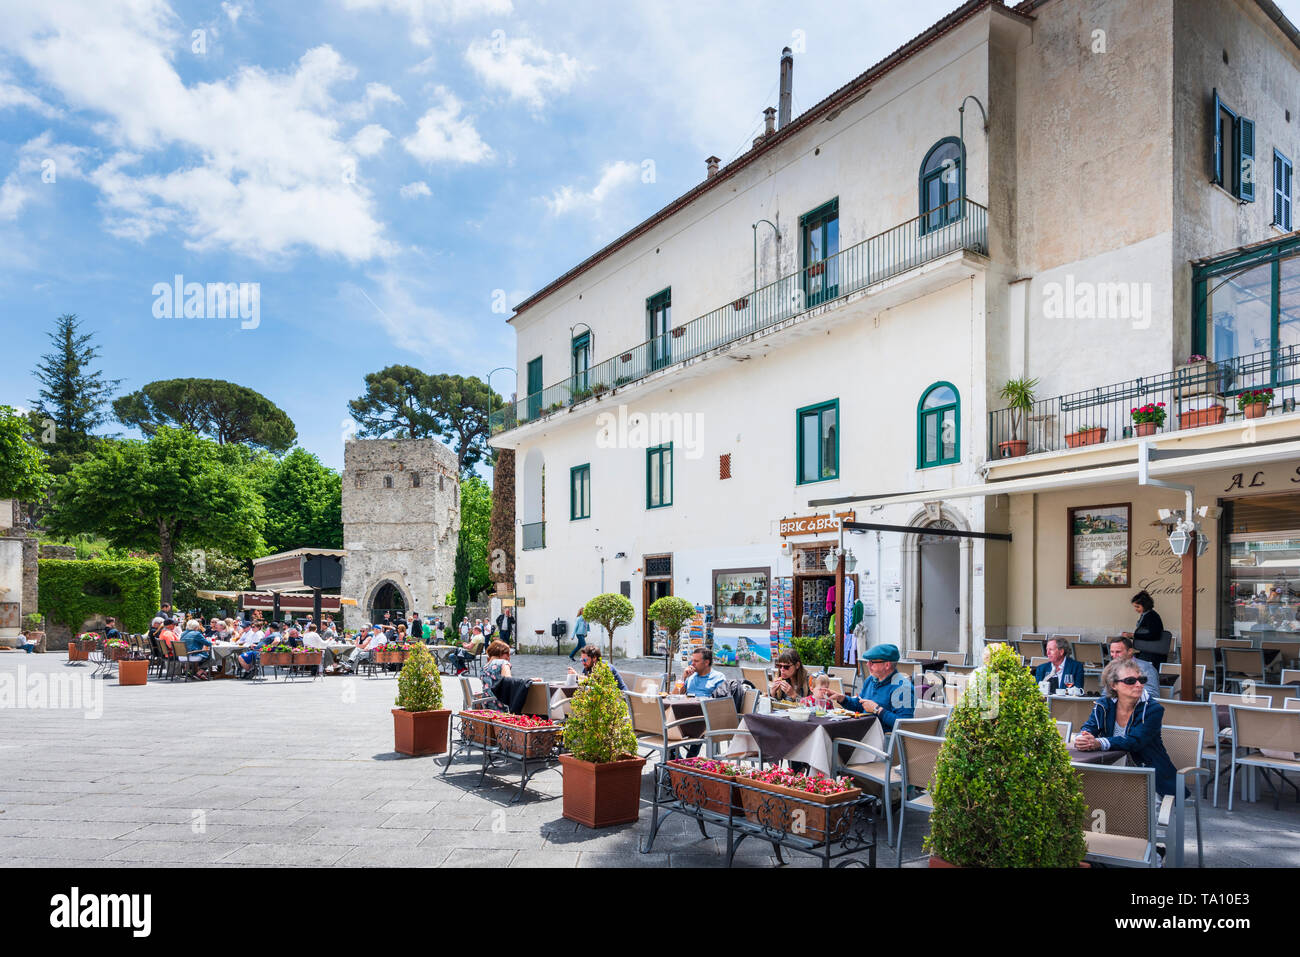 Cafe de la chaussée et des restaurants à Piazza Duomo, le maincentral carré dans le village perché de Ravello au-dessus de la côte de la Campanie Italie Amafli Banque D'Images